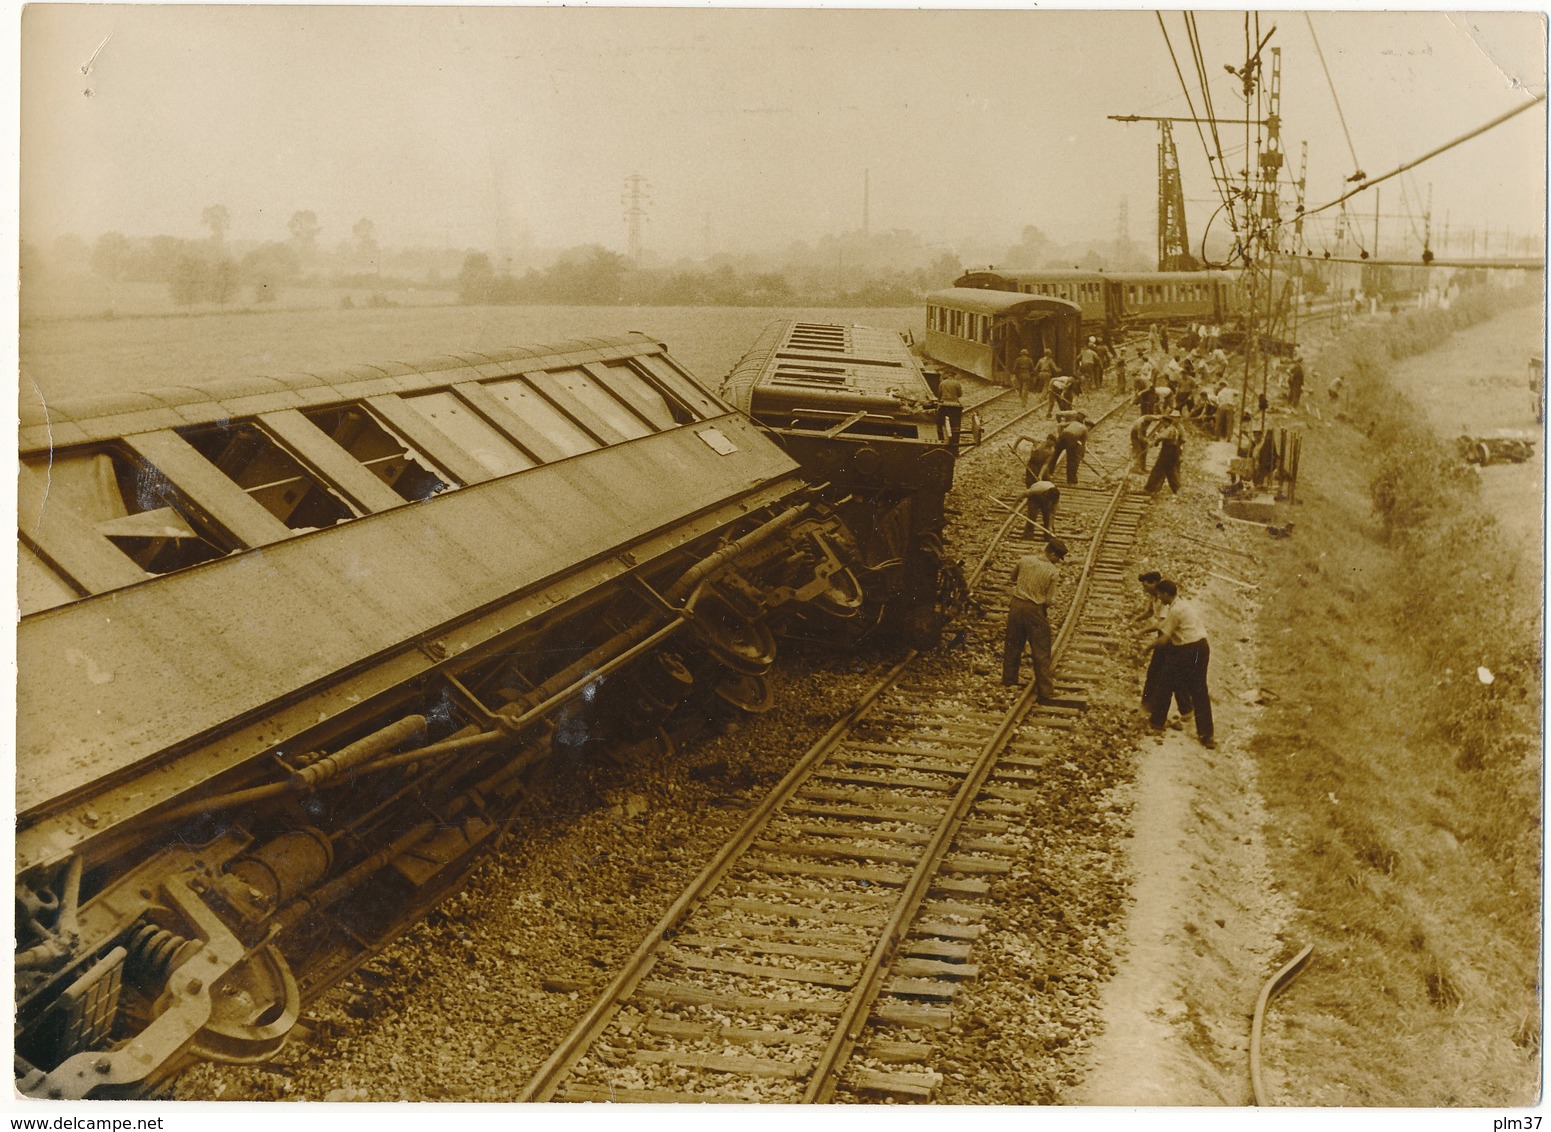 LE THEIL (61) - Catastrophe Ferroviaire 1961 - Déraillement Du Roscoff-Paris - Photo De Presse A.F.P. - Lieux